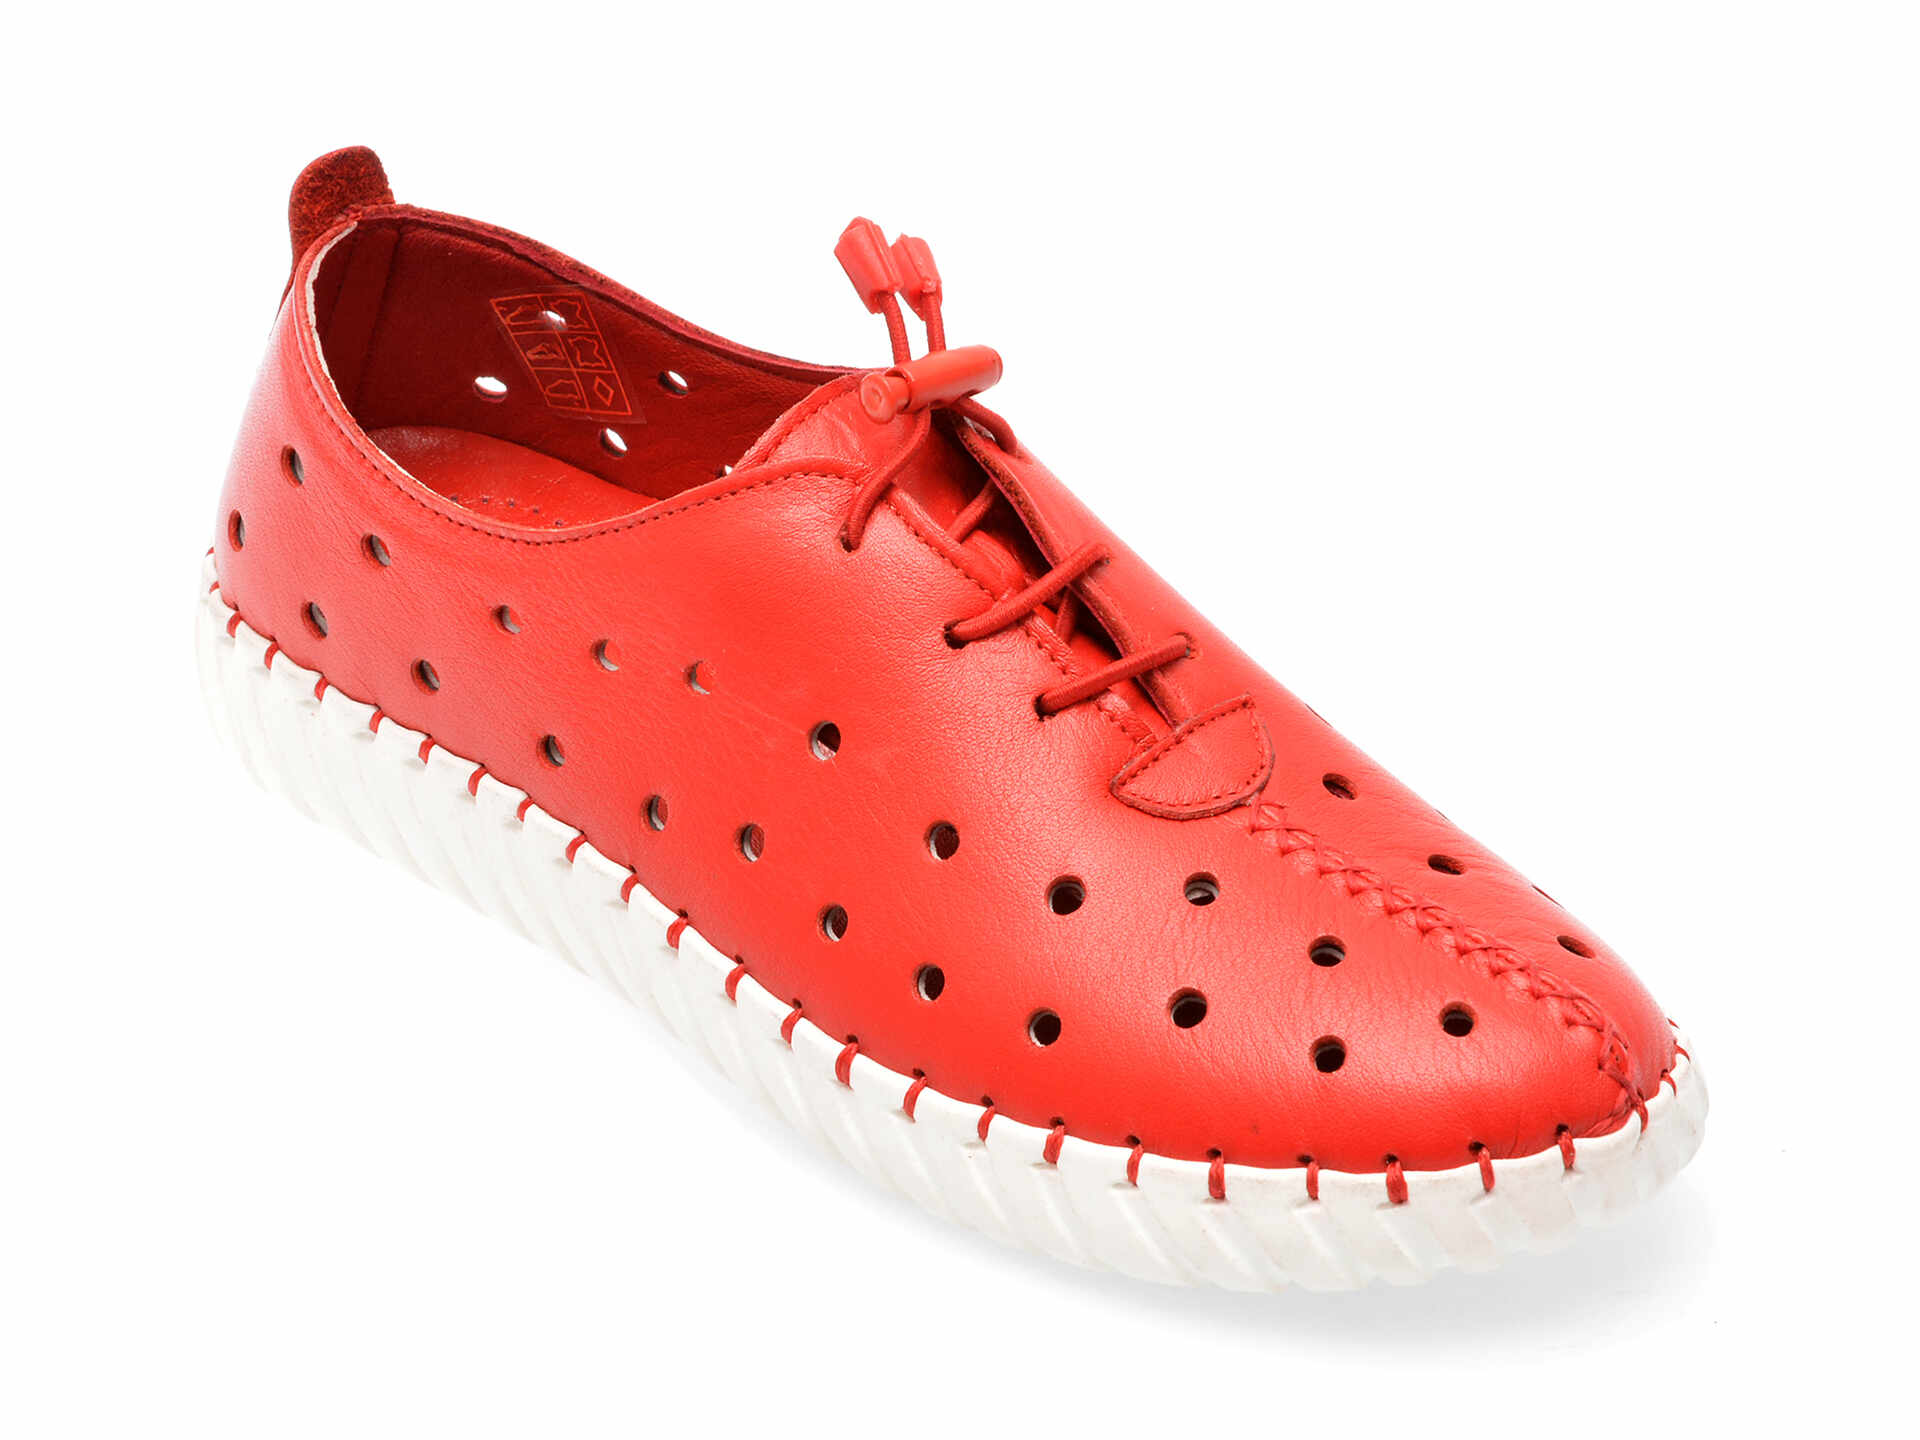 Pantofi GRYXX rosii, 680, din piele naturala